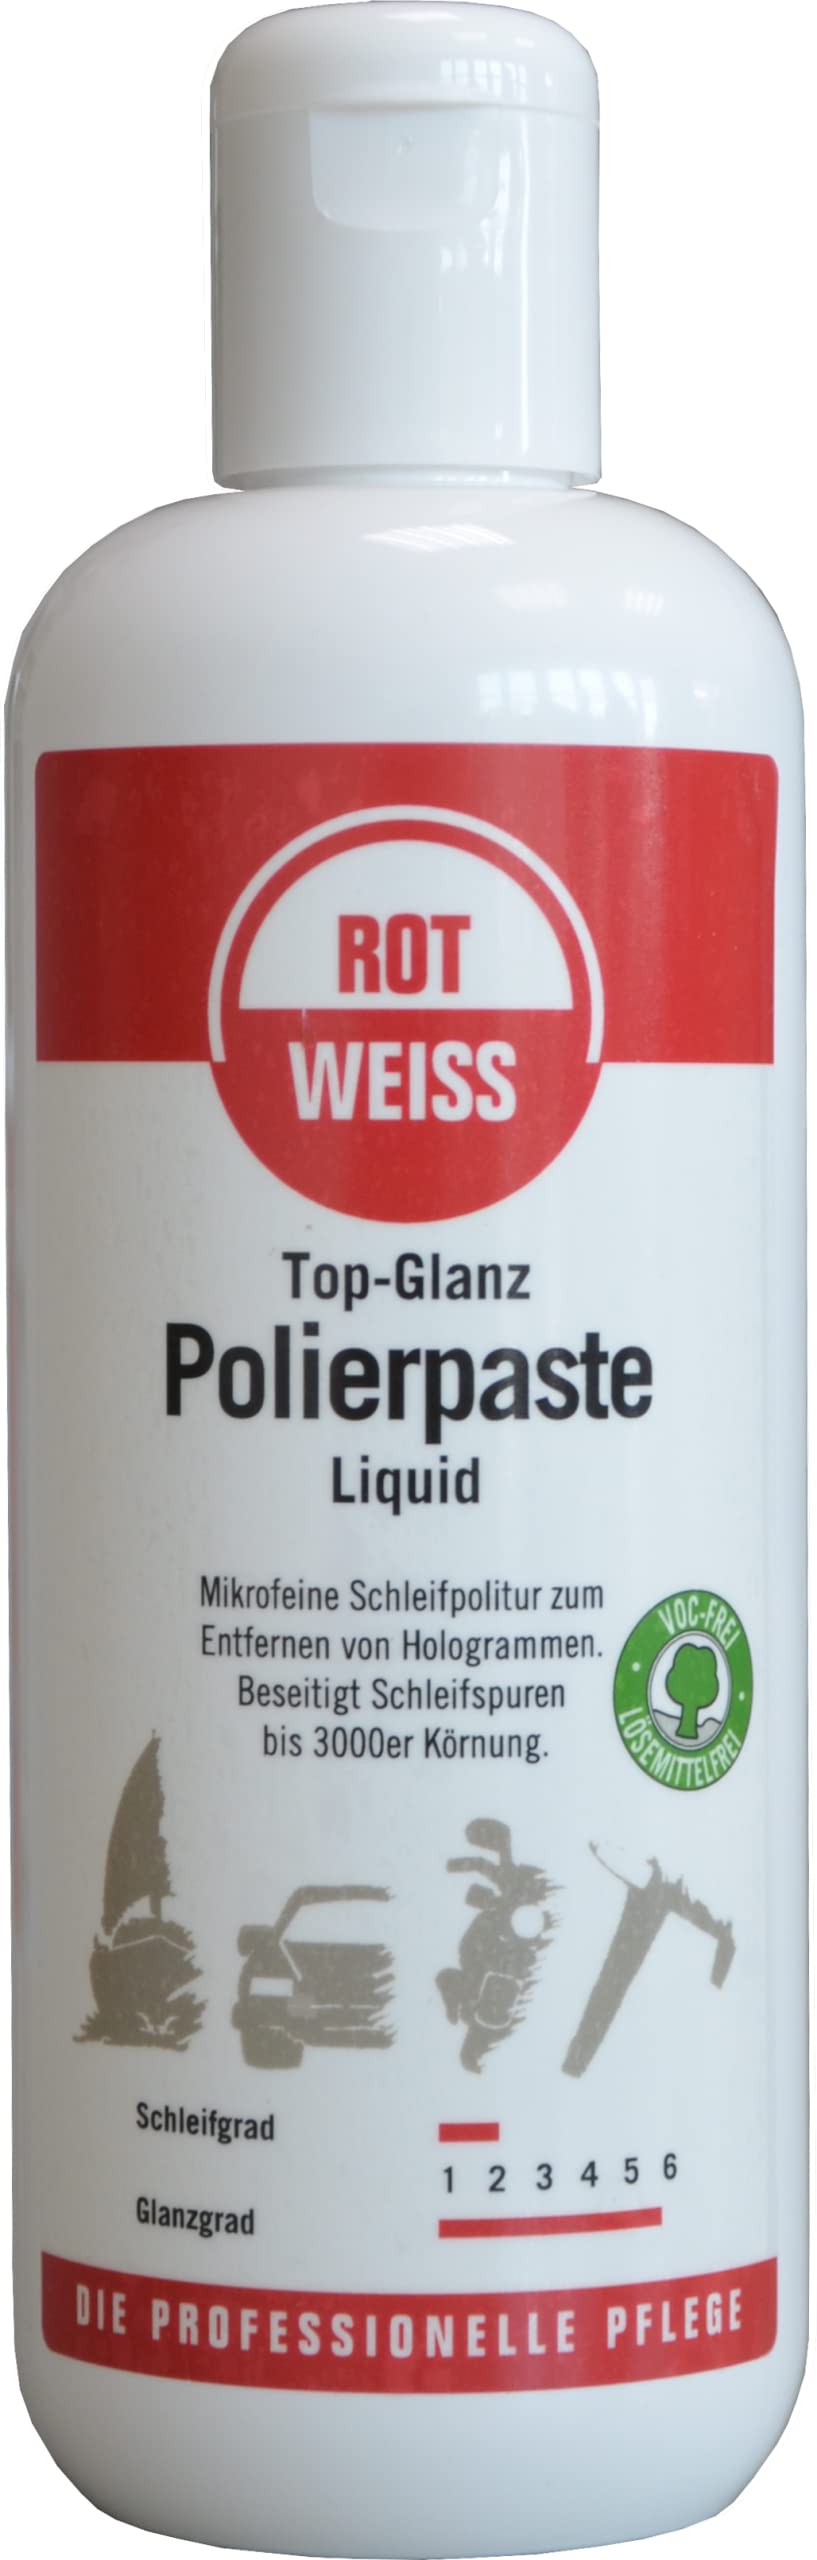 ROT WEISS 1555 Top-Glanz Polierpaste Liquid 500 ml